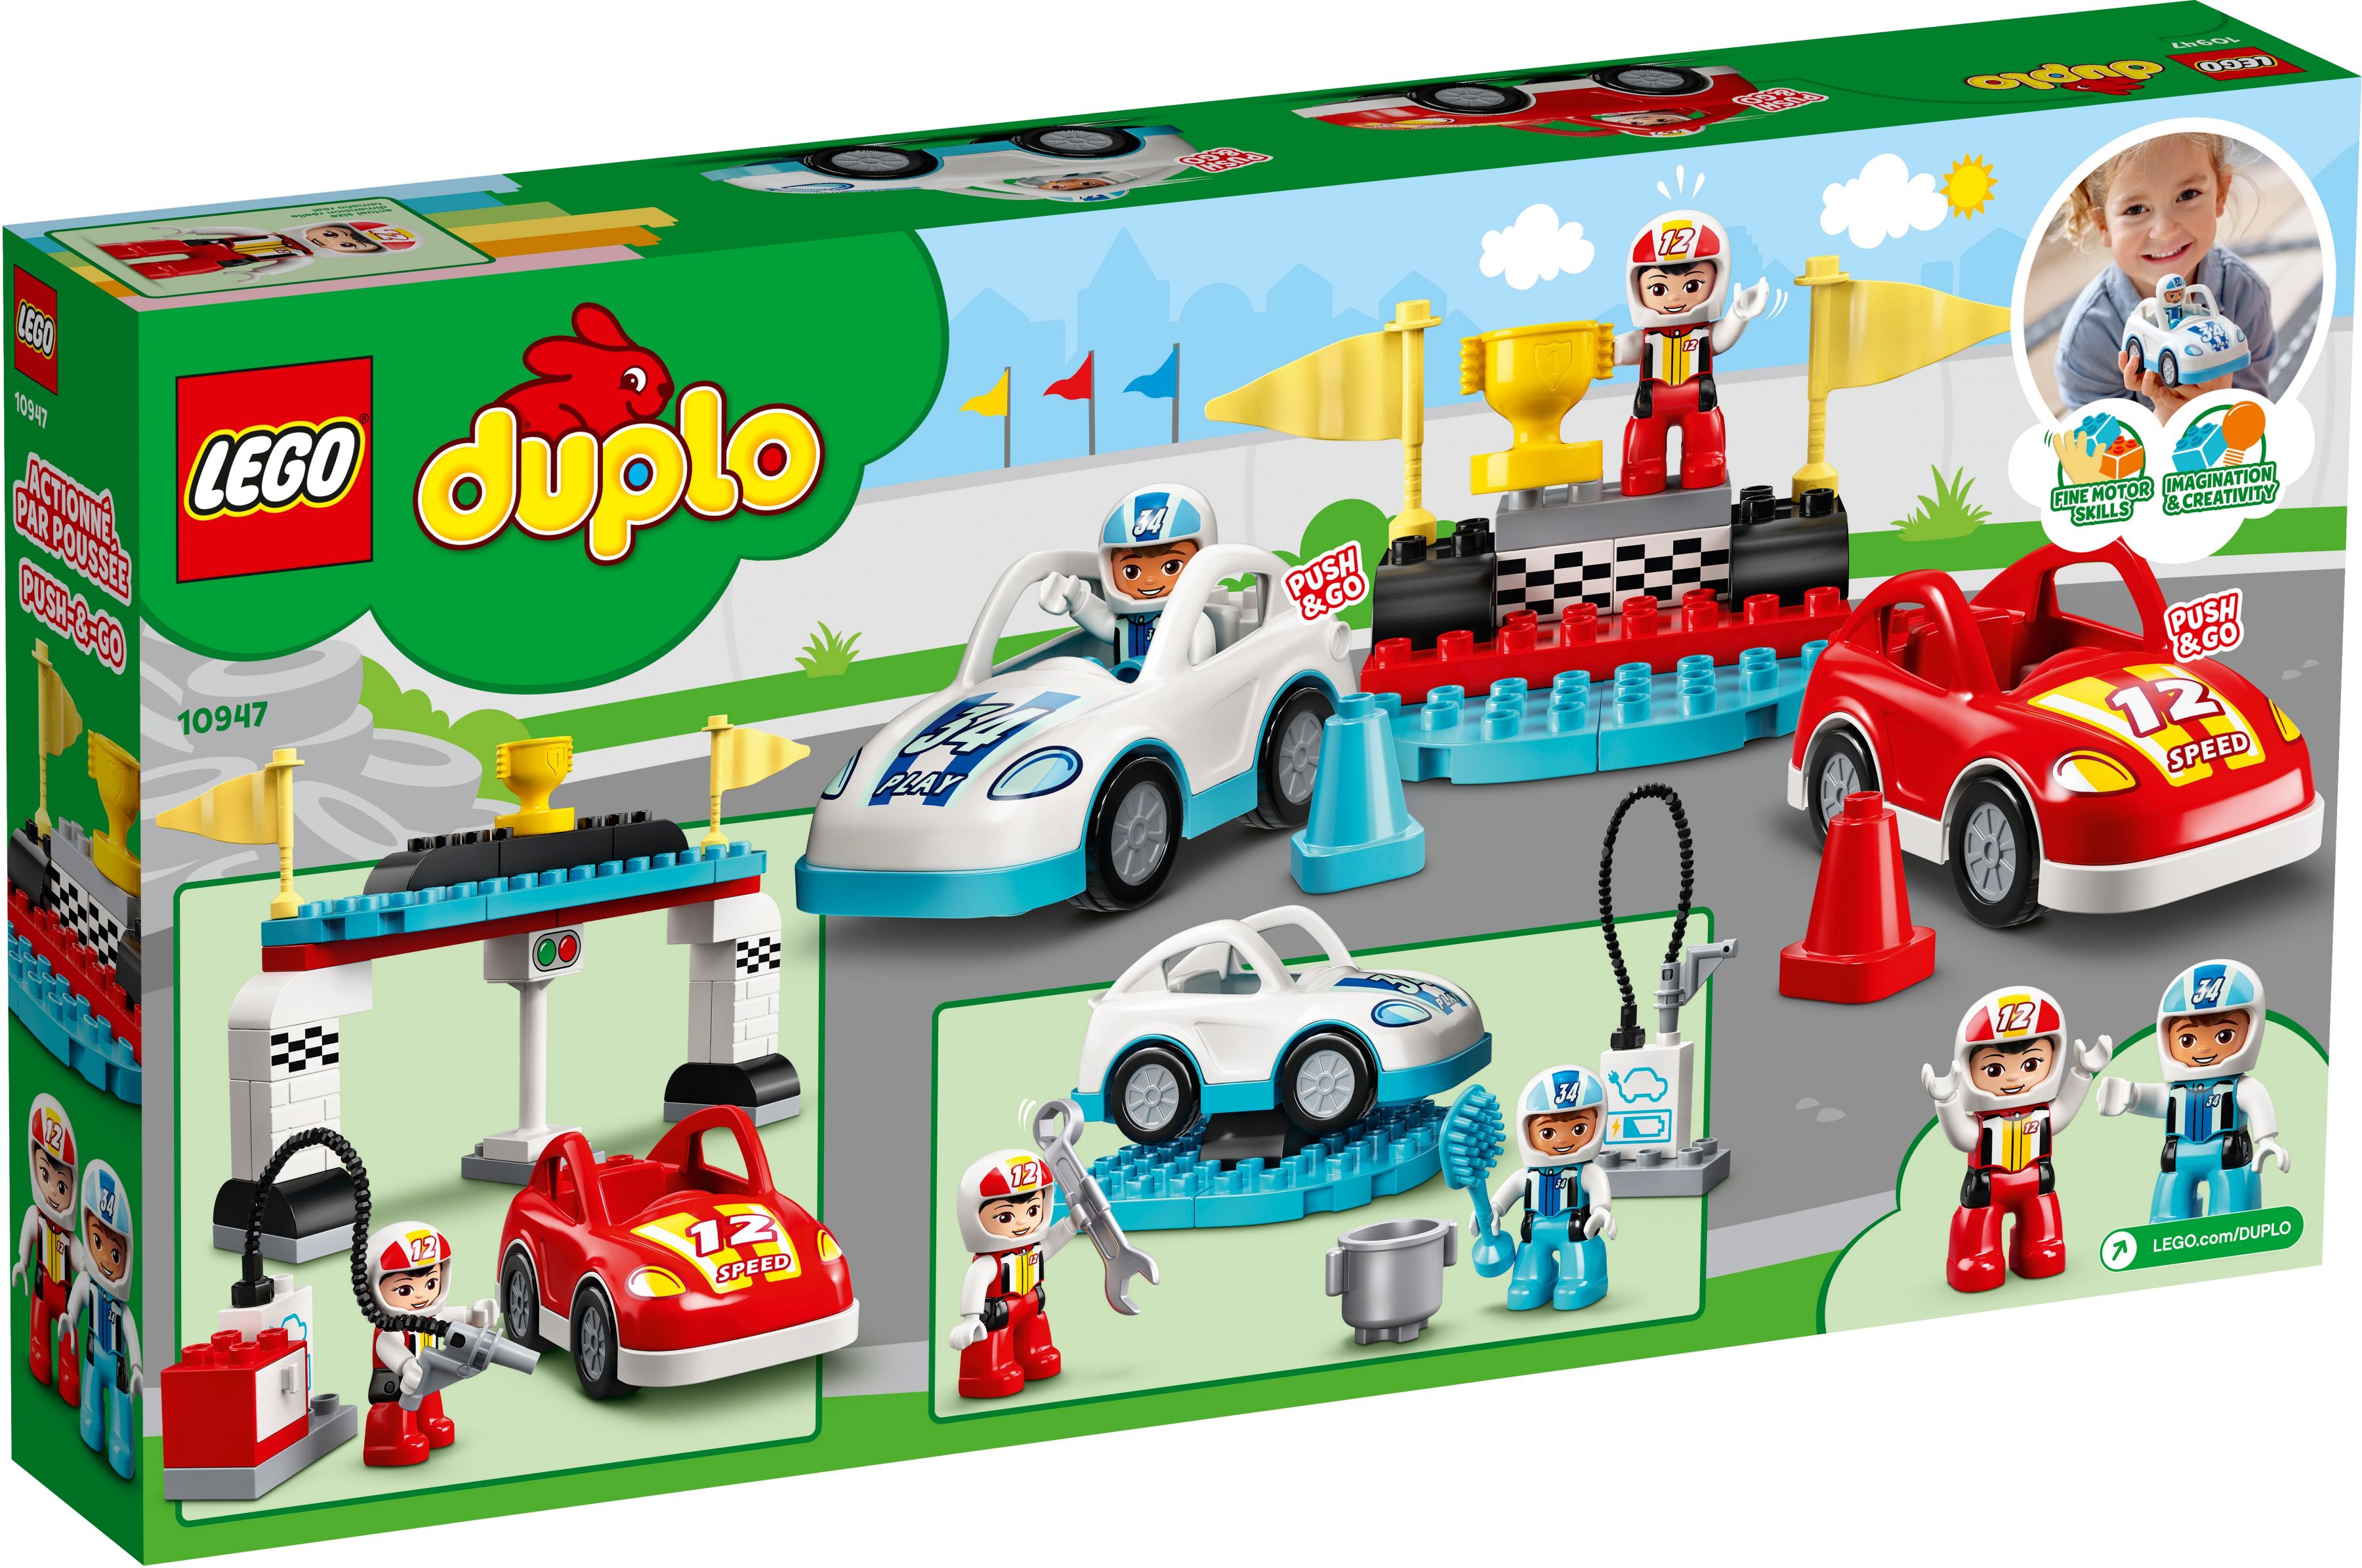 LEGO Duplo 10947 Rennwagen LEGO_10947_box5_v39.jpg